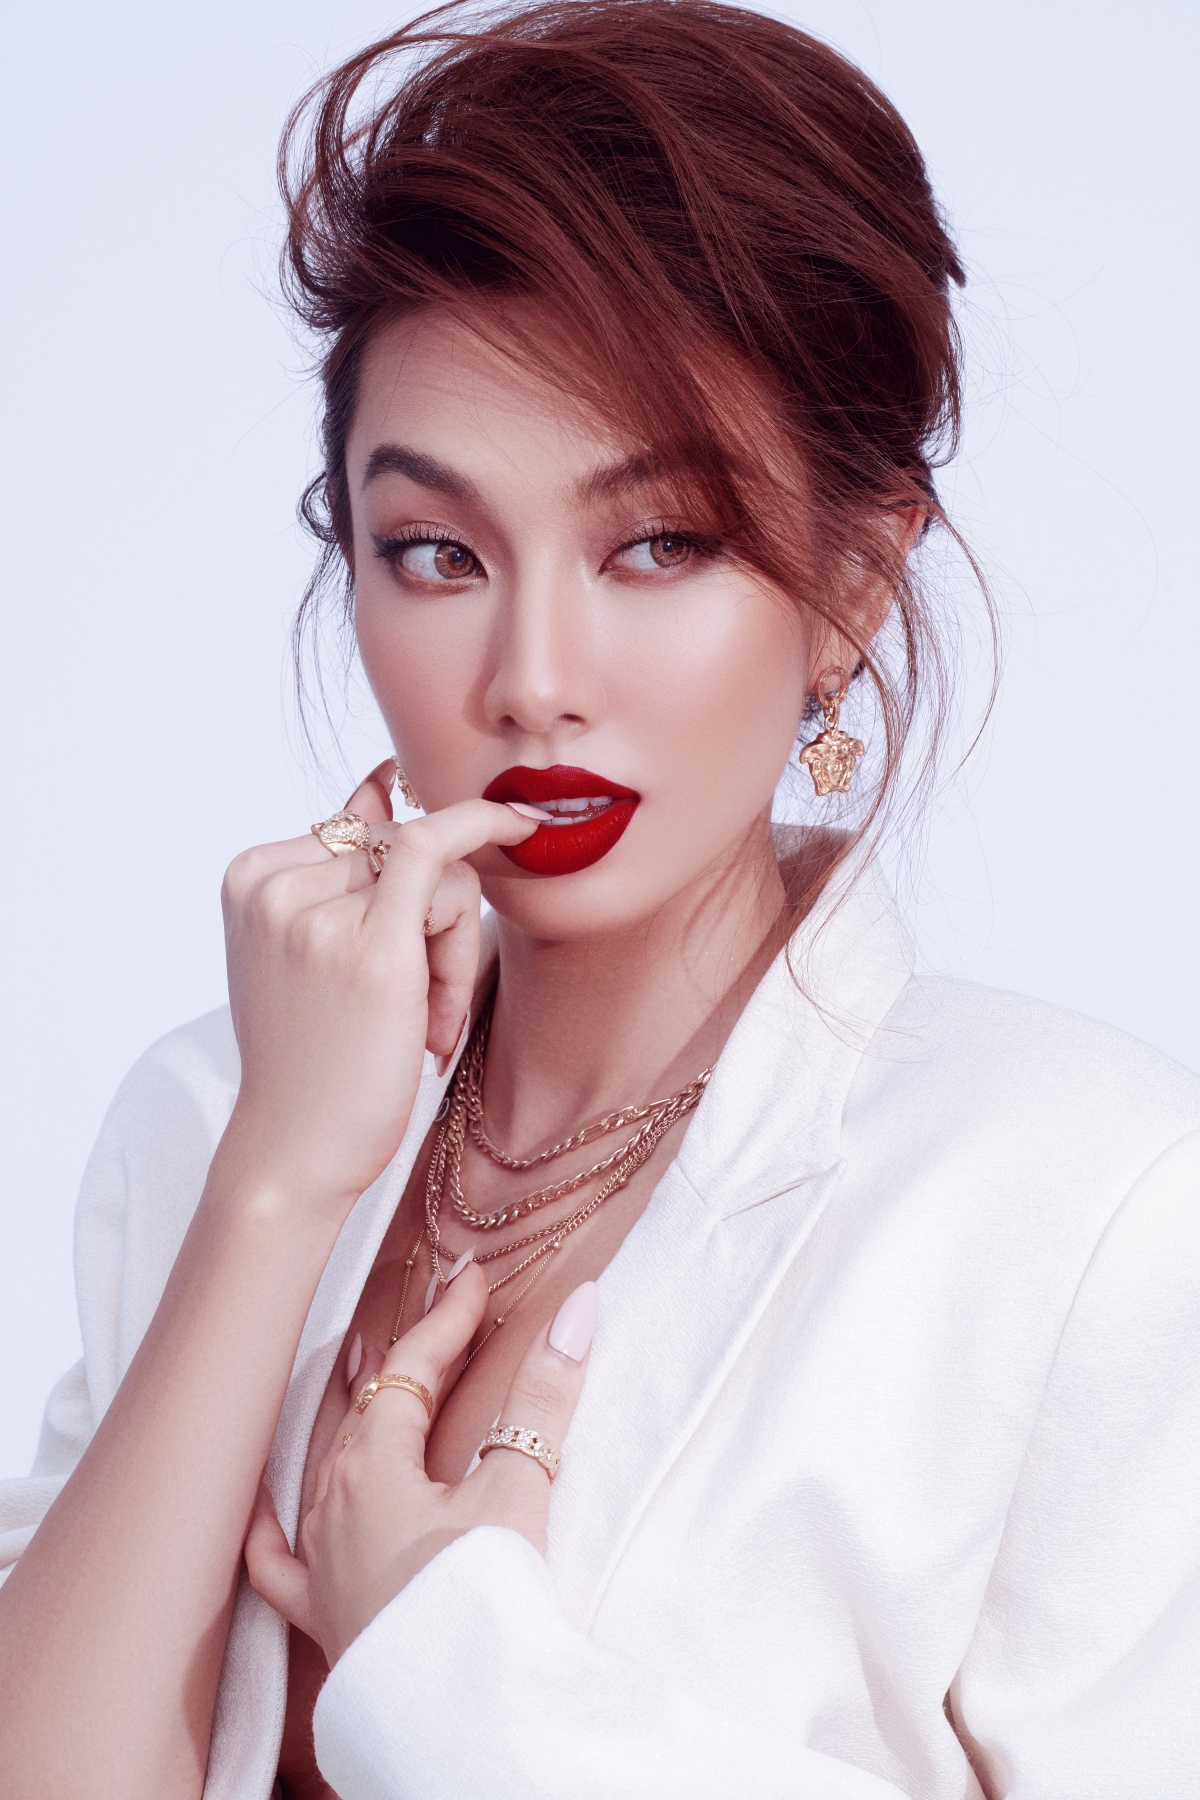 Hoa hậu Thùy Tiên “biến hóa” đa sắc thái trong bộ ảnh mới khiến fan xôn xao - Ảnh 1.